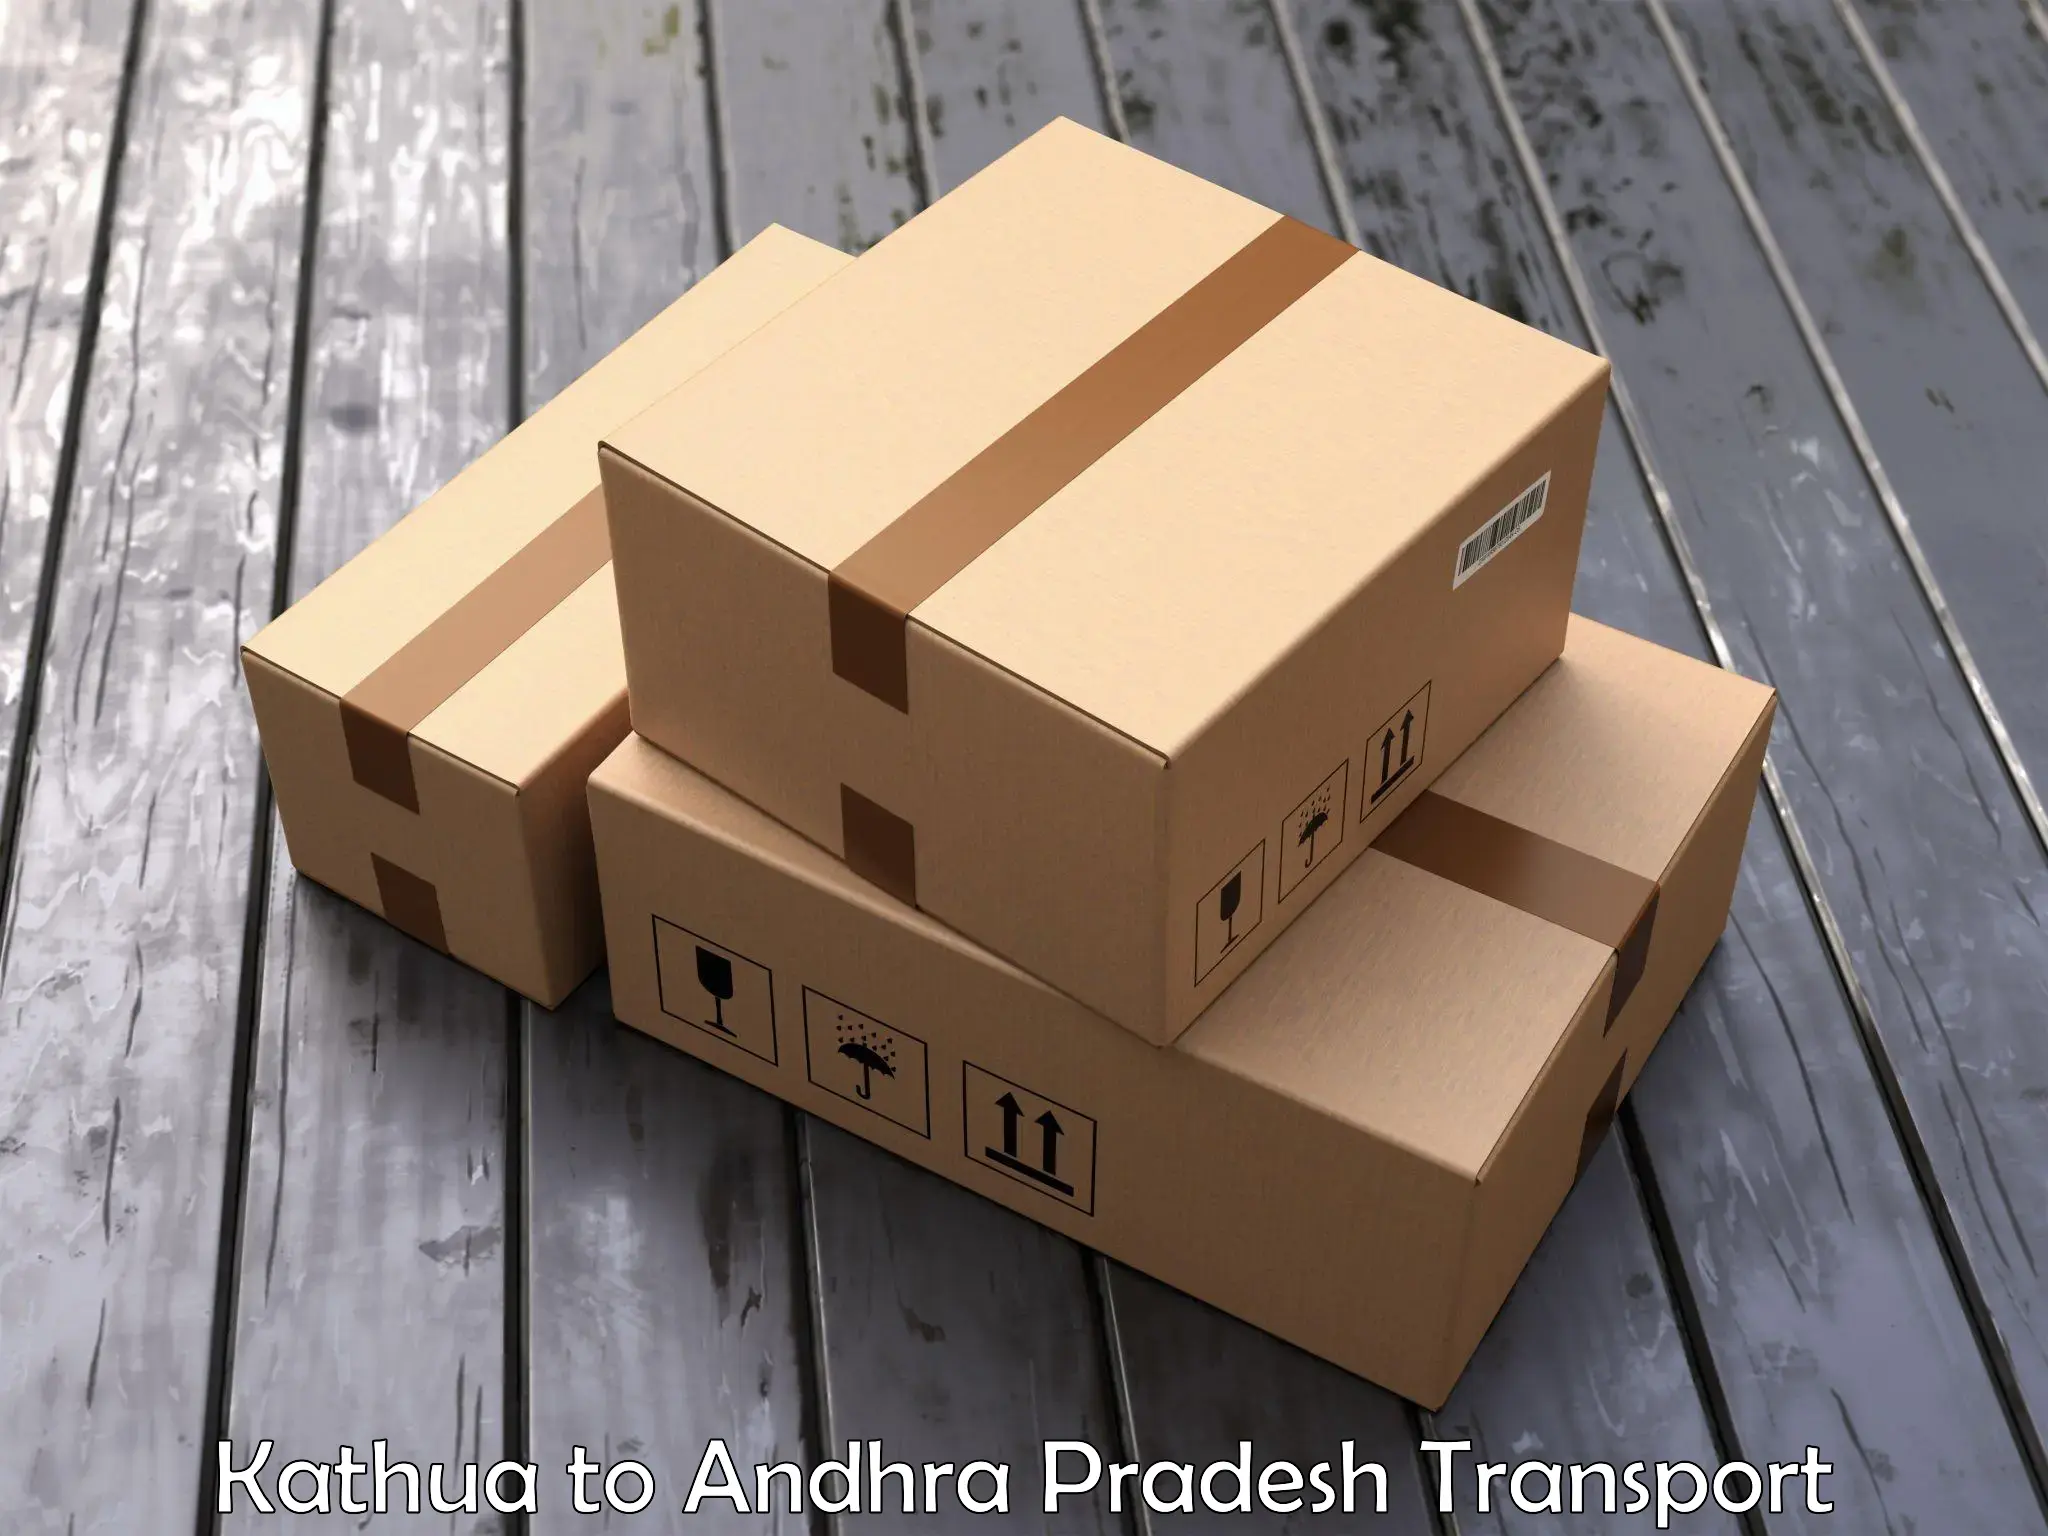 Two wheeler transport services Kathua to Tirupati